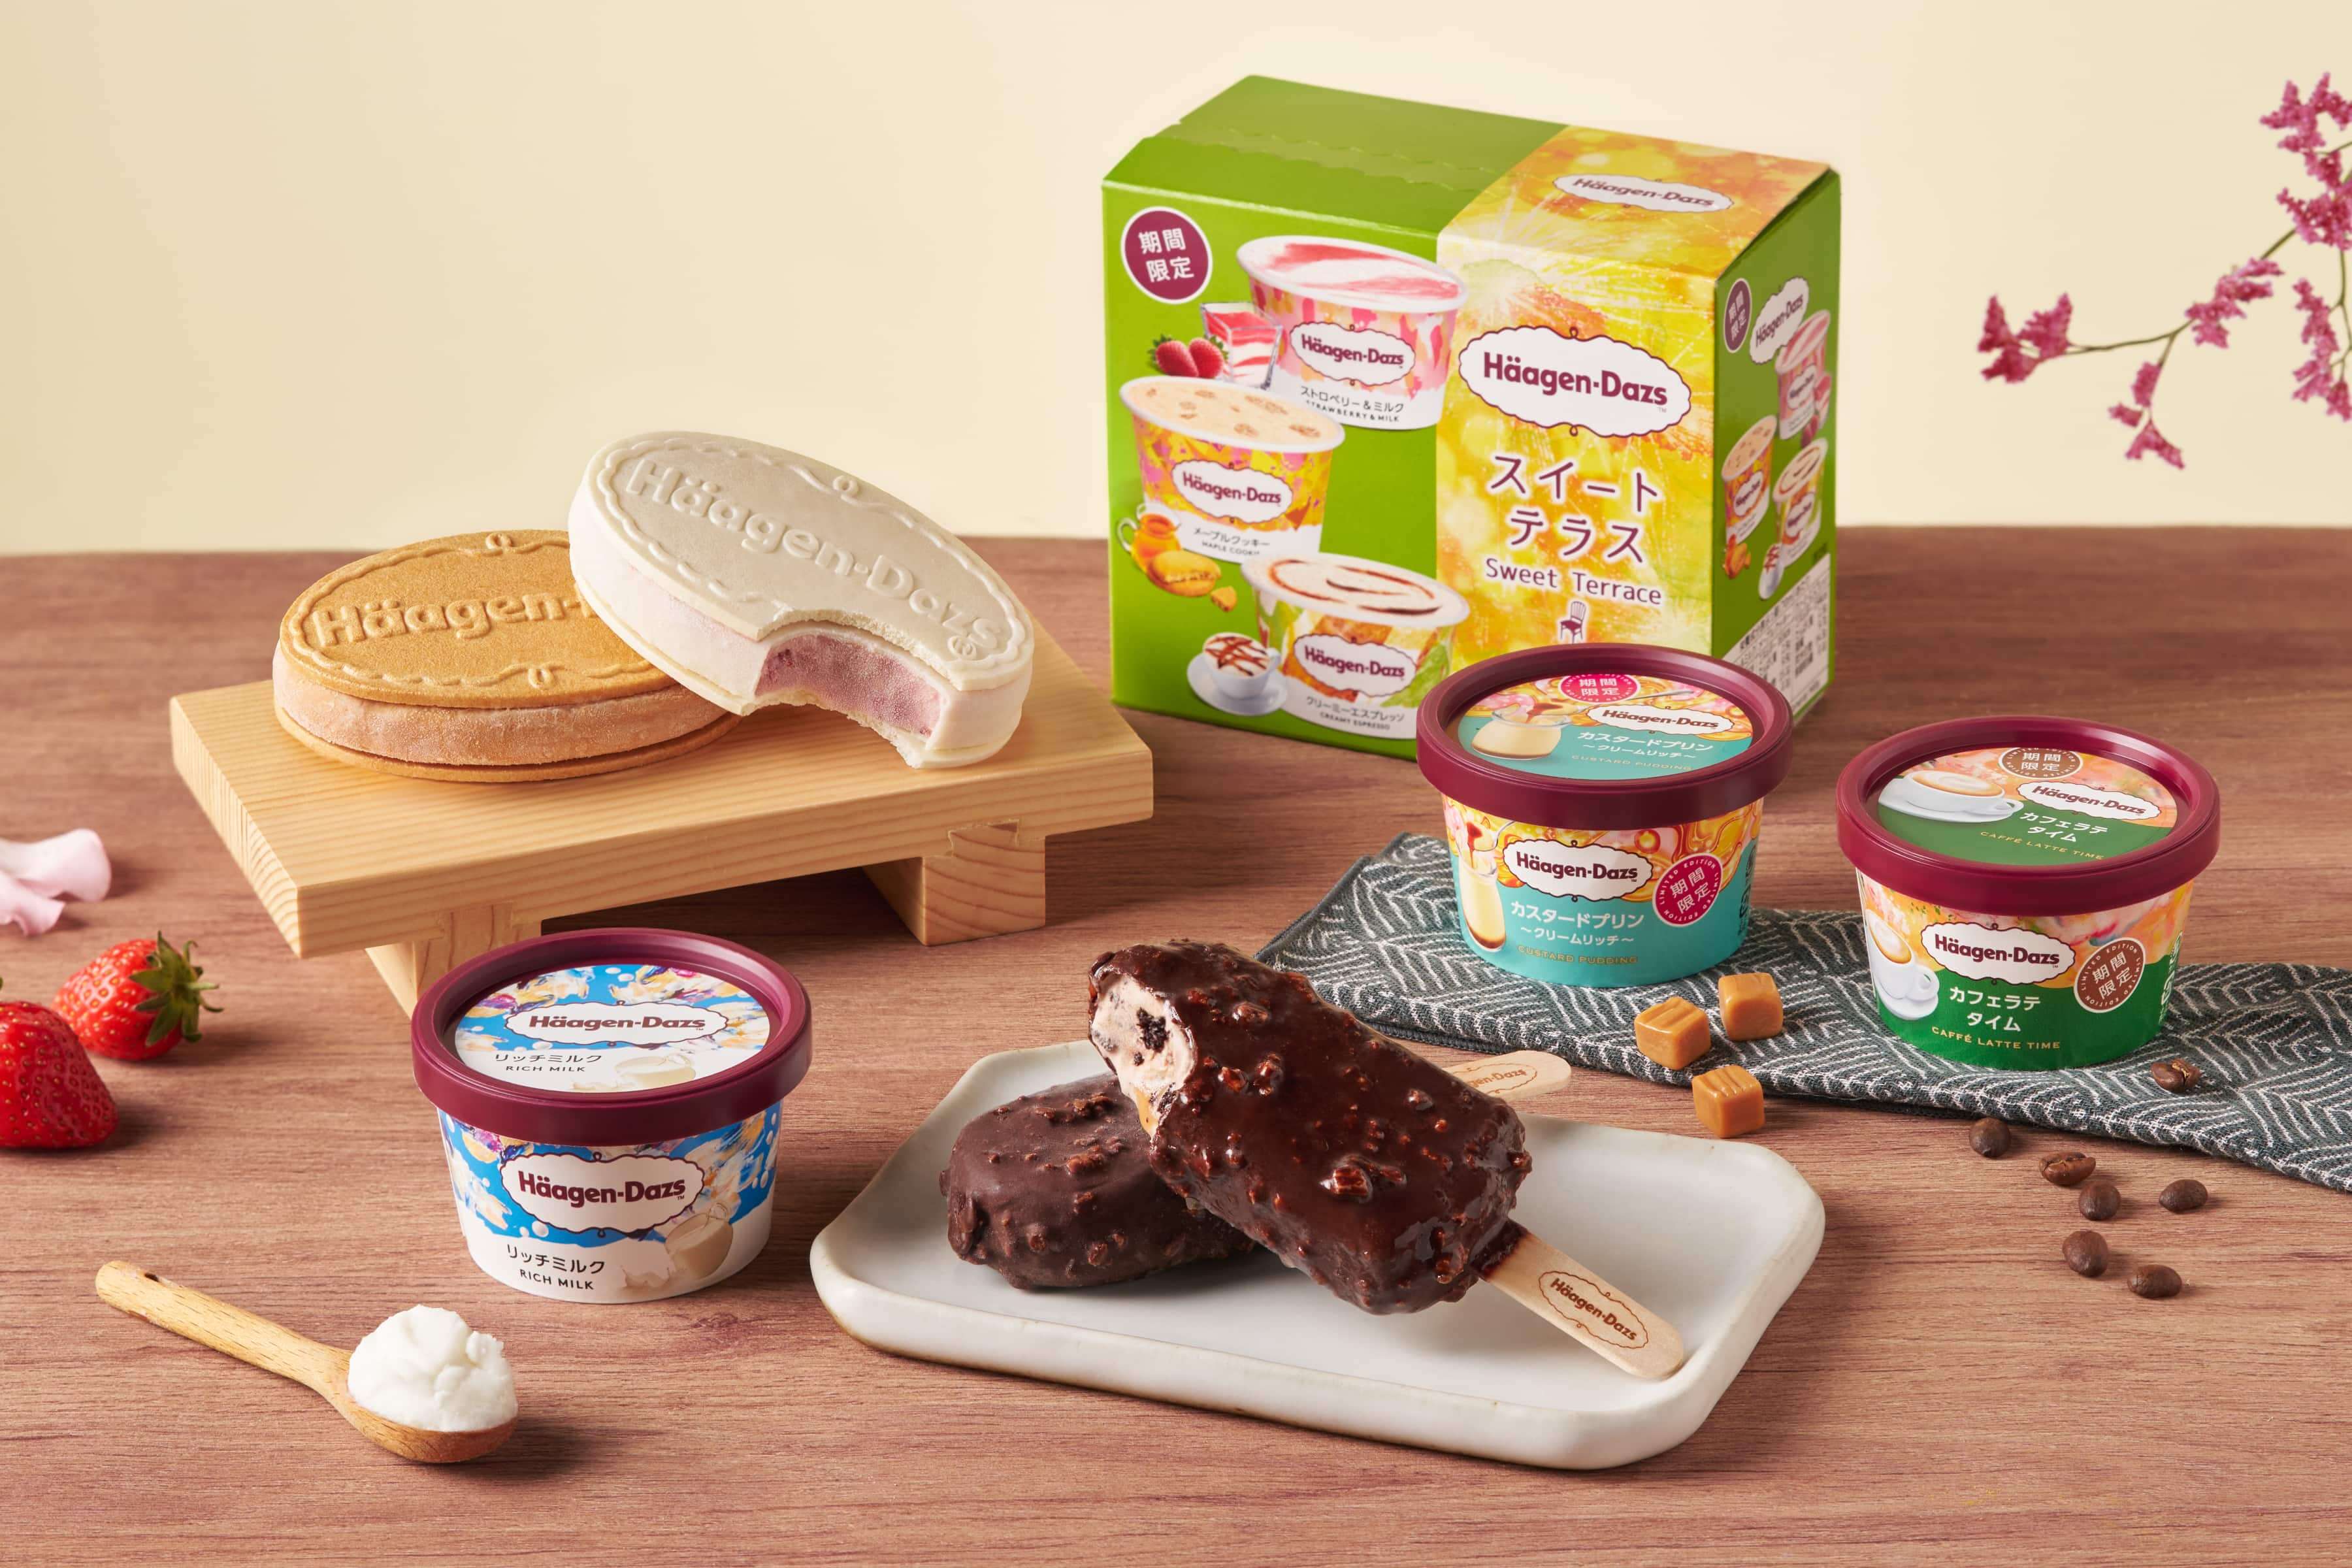 哈根達斯日本限定口味首度登台 冰淇淋雪酥夢幻上市